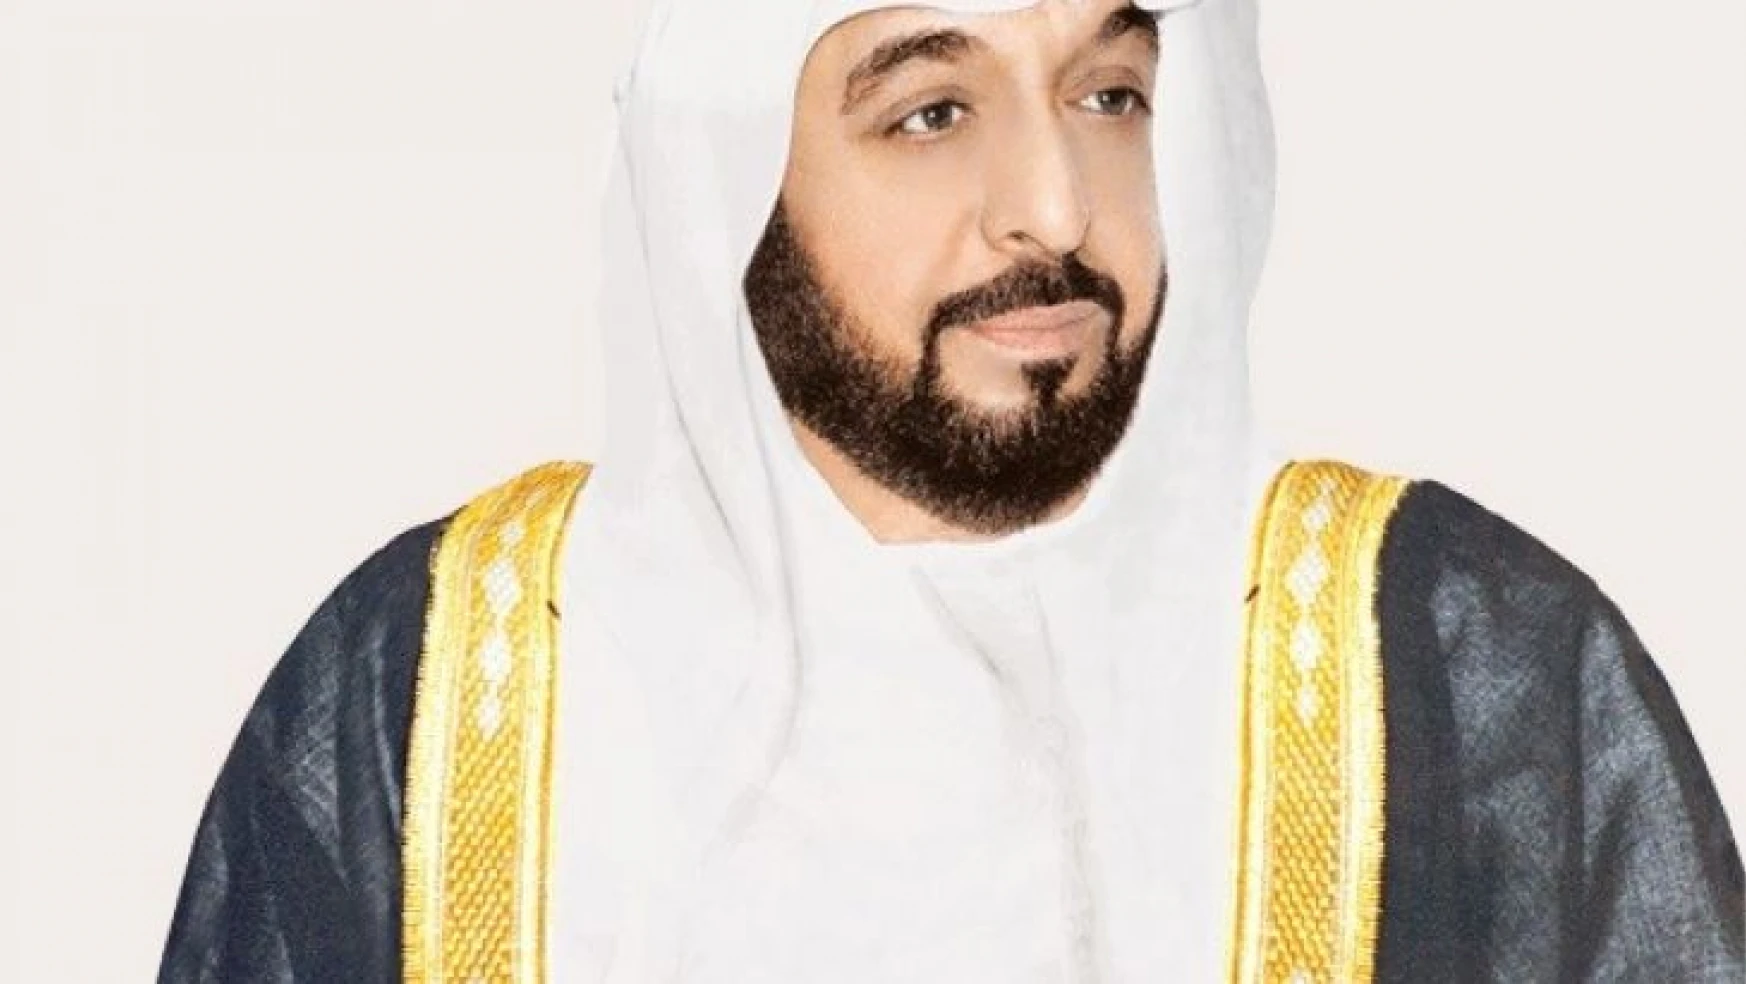 Birleşik Arap Emirlikleri Devlet Başkanı Şeyh Halife bin Zayed Al Nahyan'ın 73 yaşında hayatını kaybettiği açıklandı.